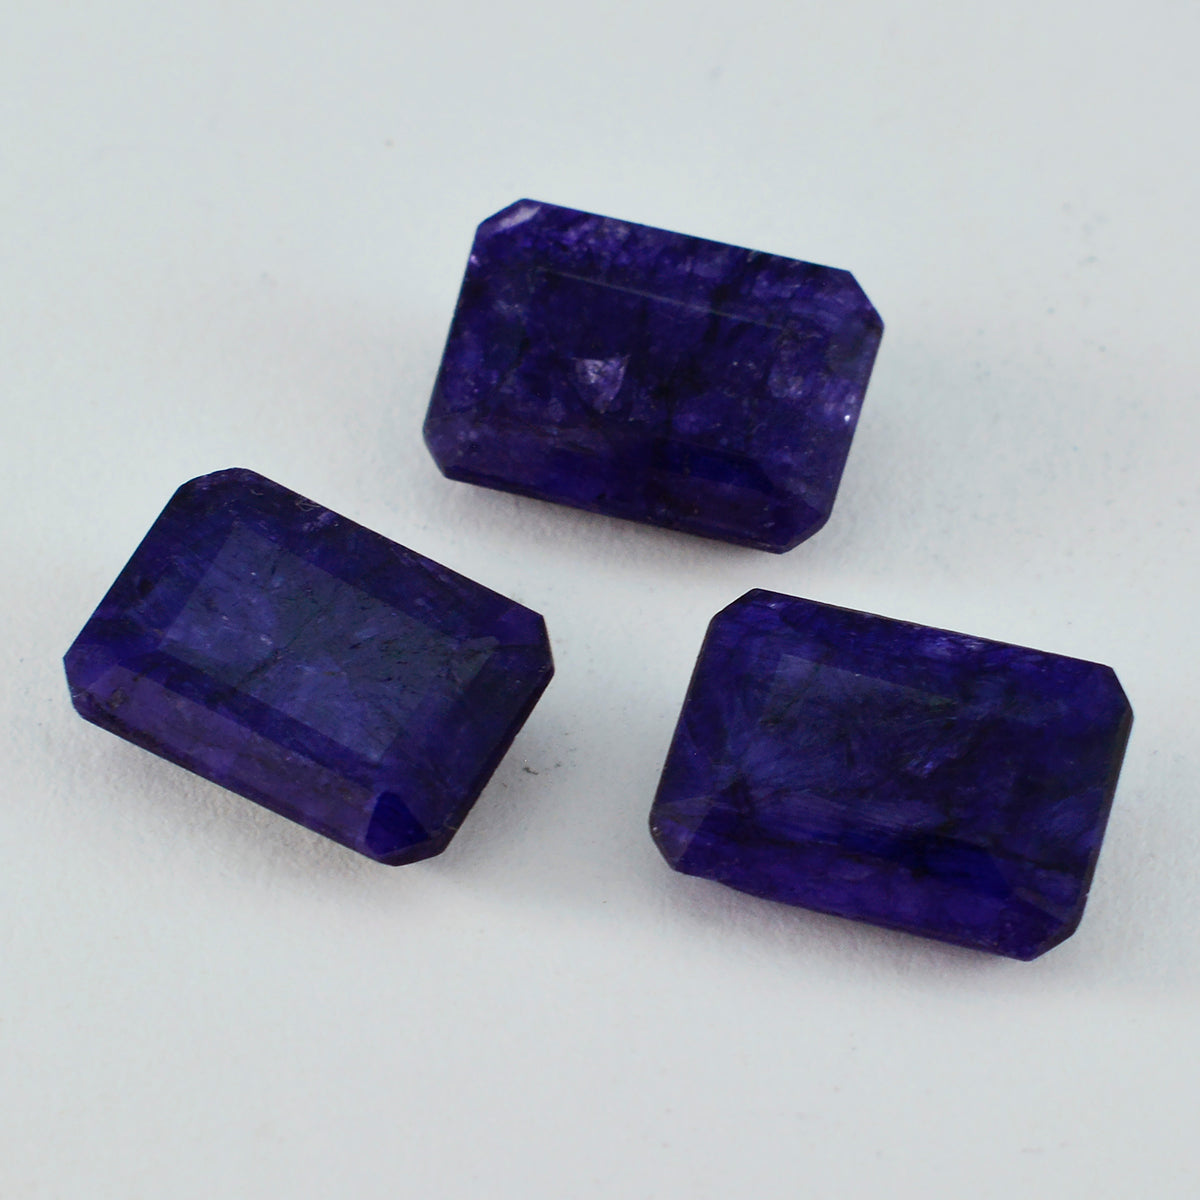 riyogems 1 шт. натуральная синяя яшма ограненная восьмиугольная форма 10x14 мм драгоценный камень удивительного качества